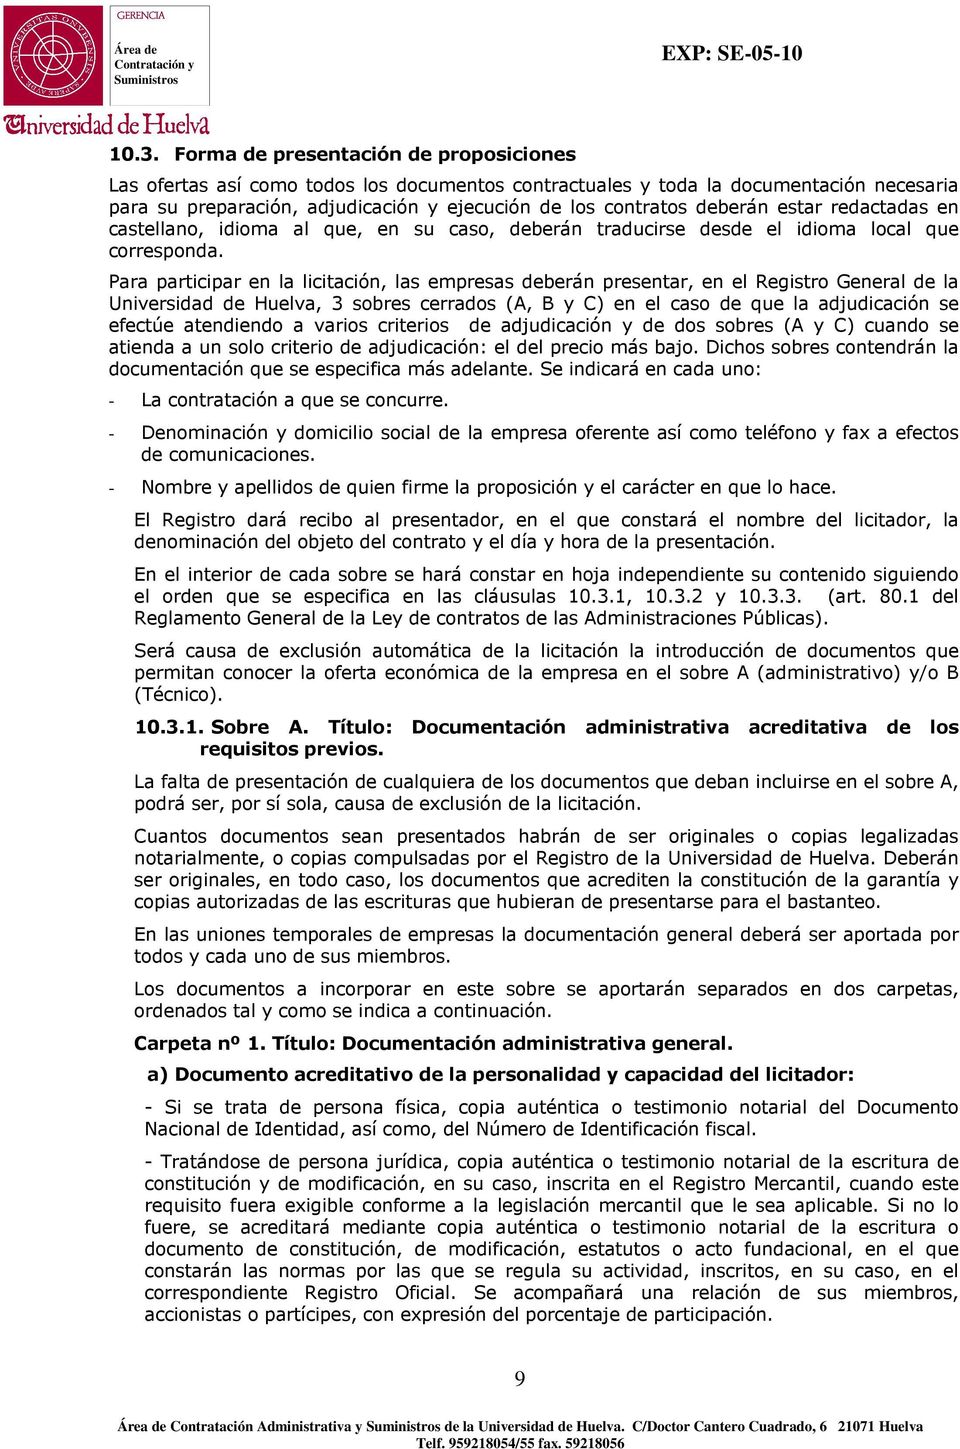 Para participar en la licitación, las empresas deberán presentar, en el Registro General de la Universidad de Huelva, 3 sobres cerrados (A, B y C) en el caso de que la adjudicación se efectúe